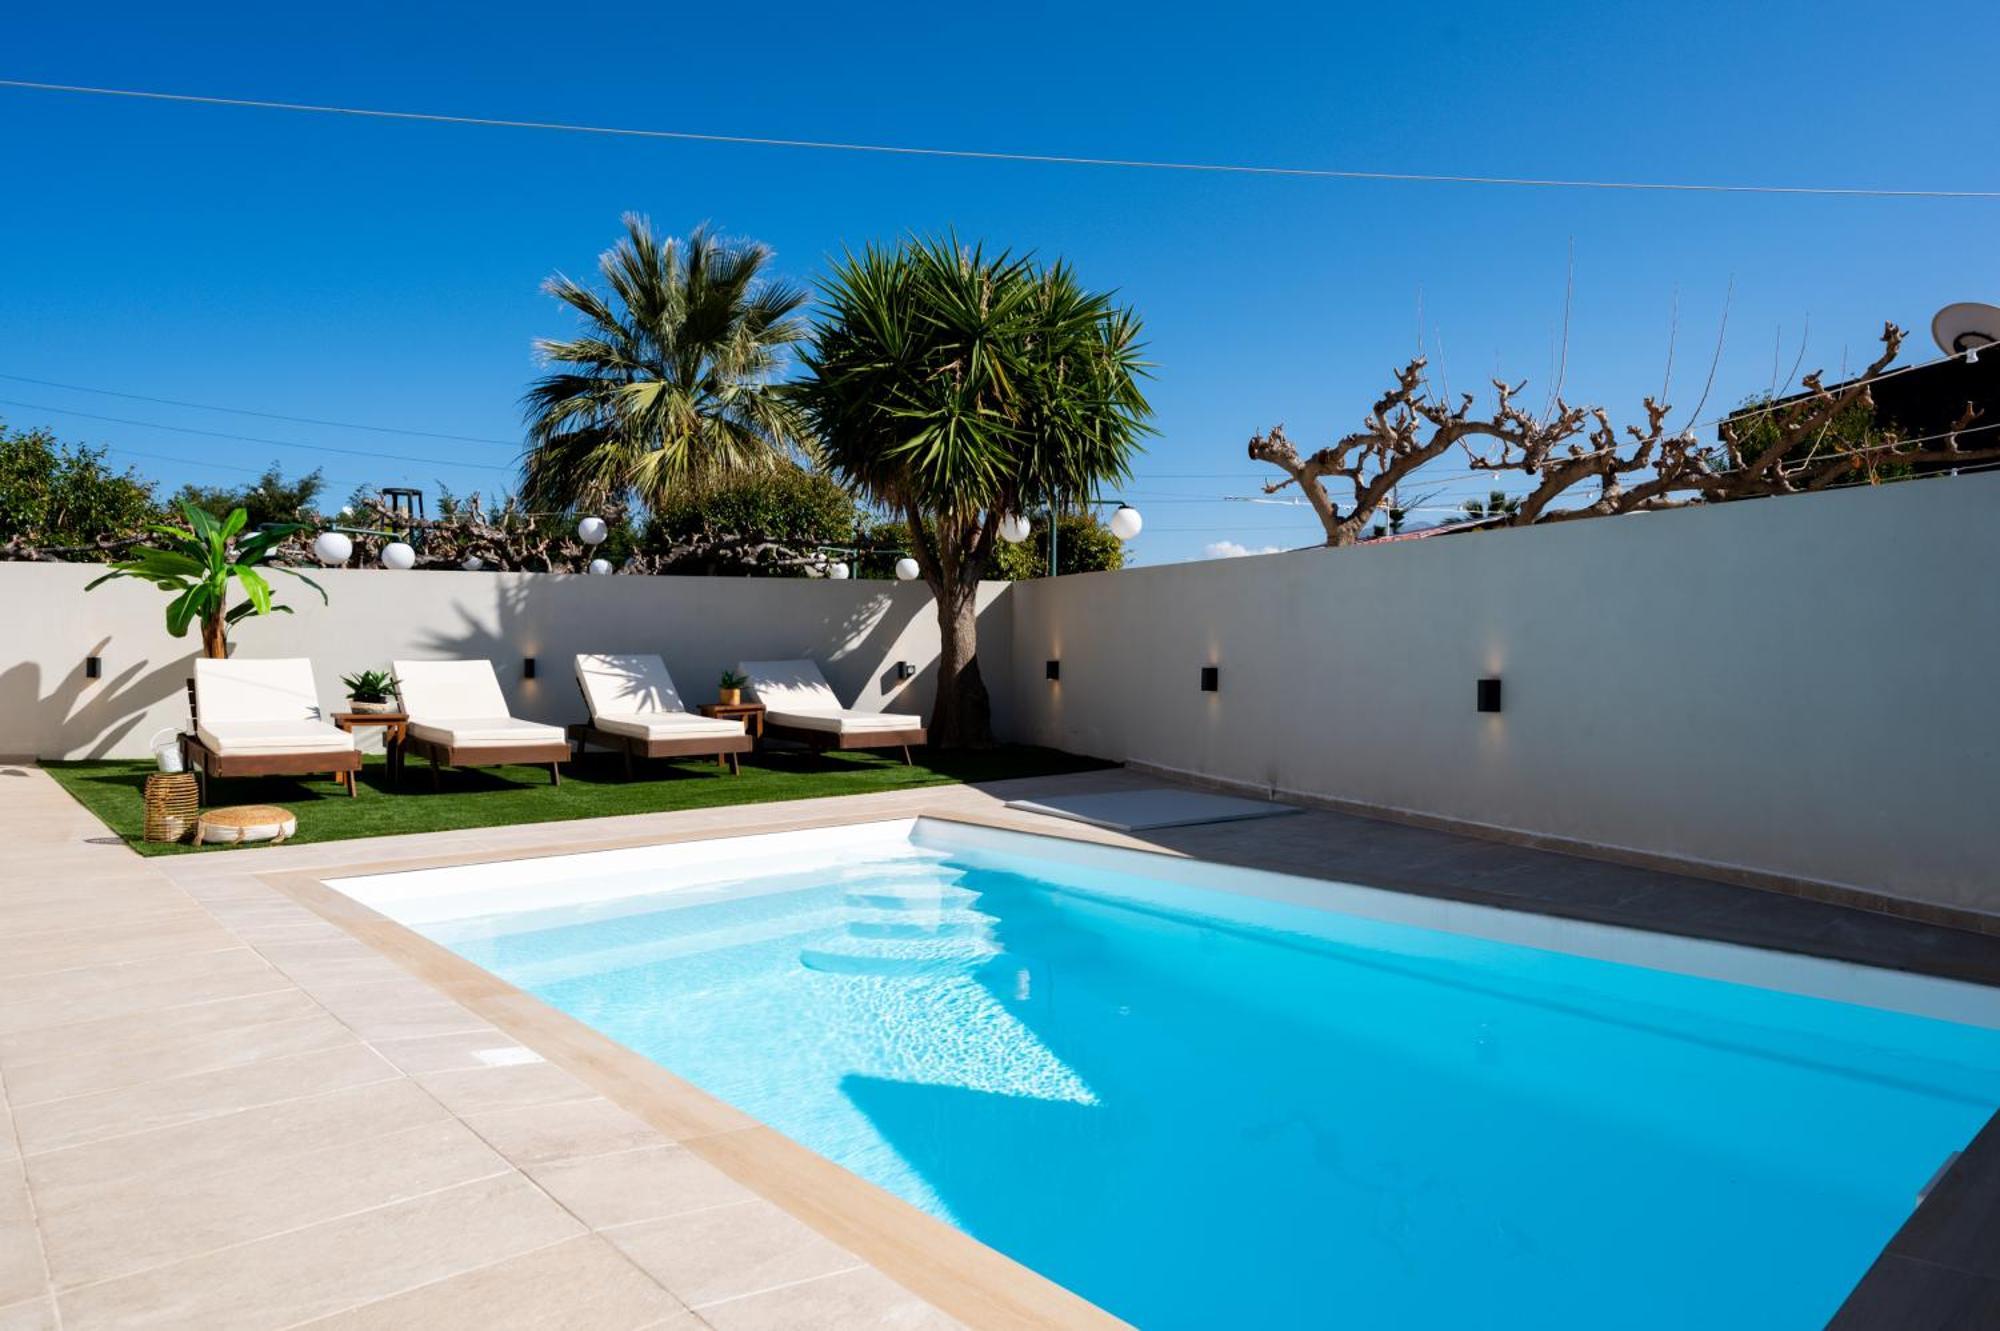 Searenity Villa Malia With Private Swimming Pool Exterior foto